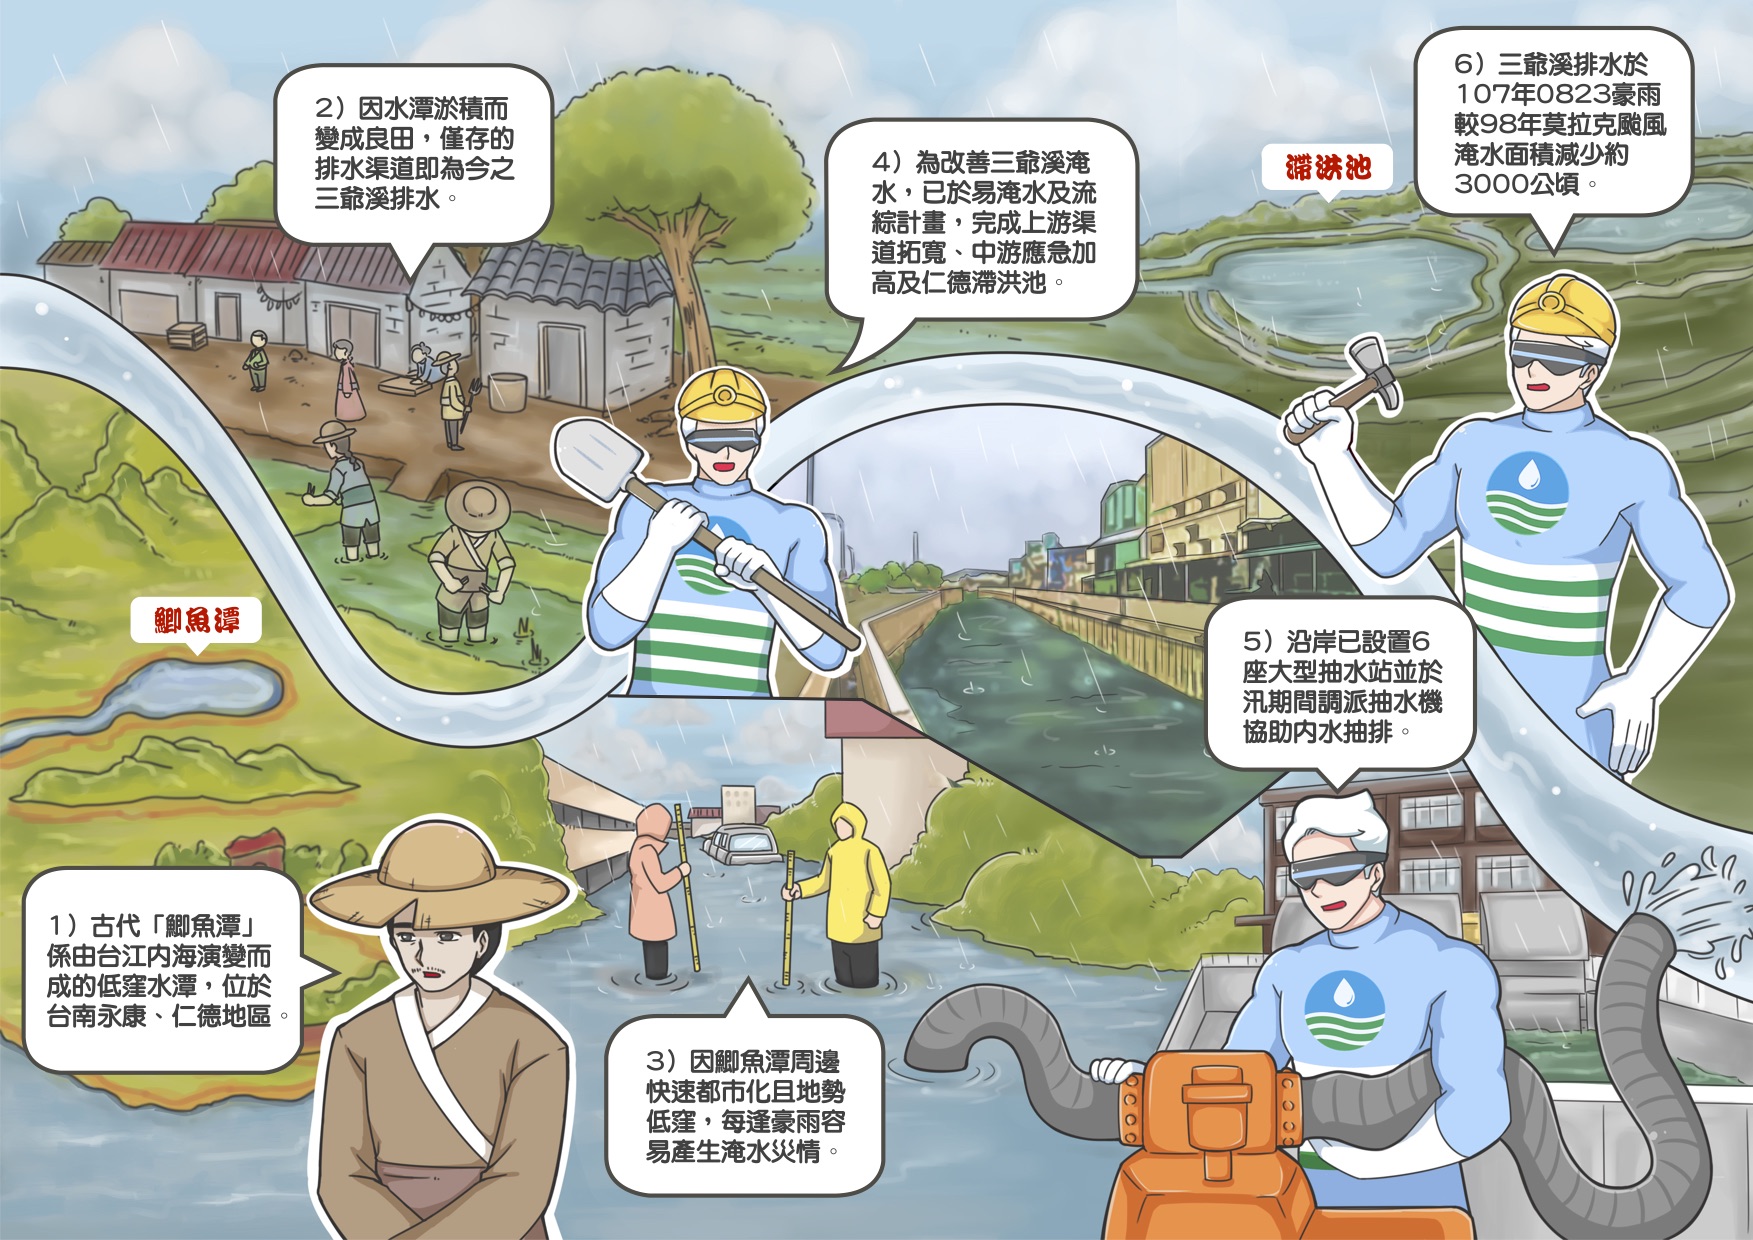 台南地區排水系統治理成效-2_圖示